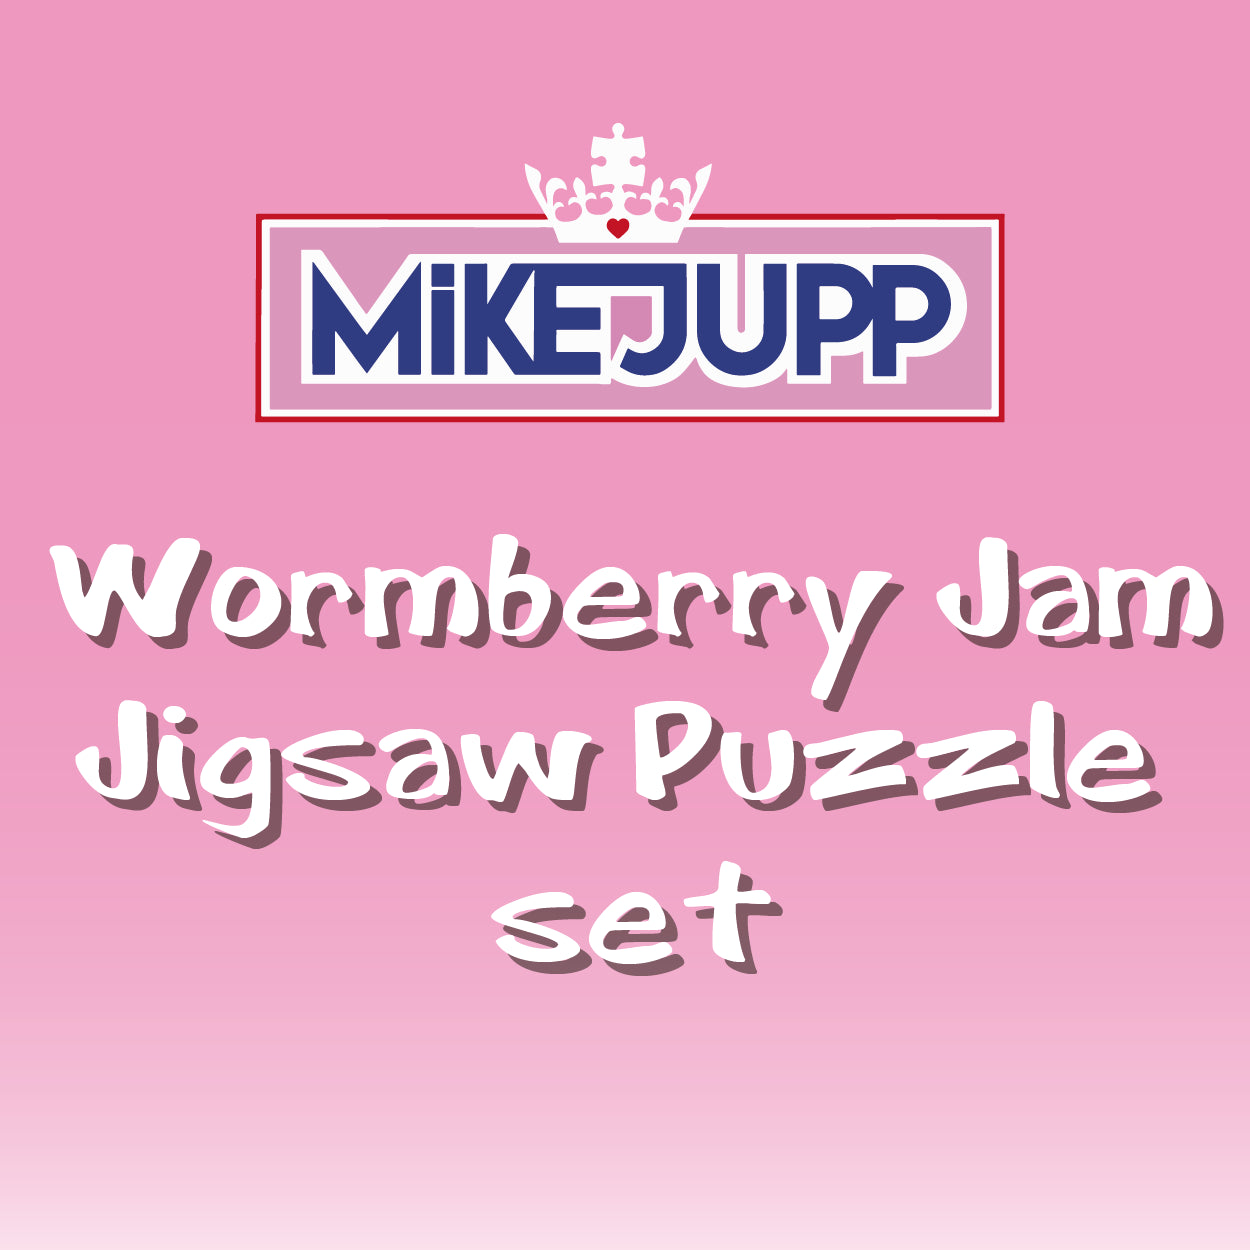 Mike Jupp Wormberry Jam Bundle Set